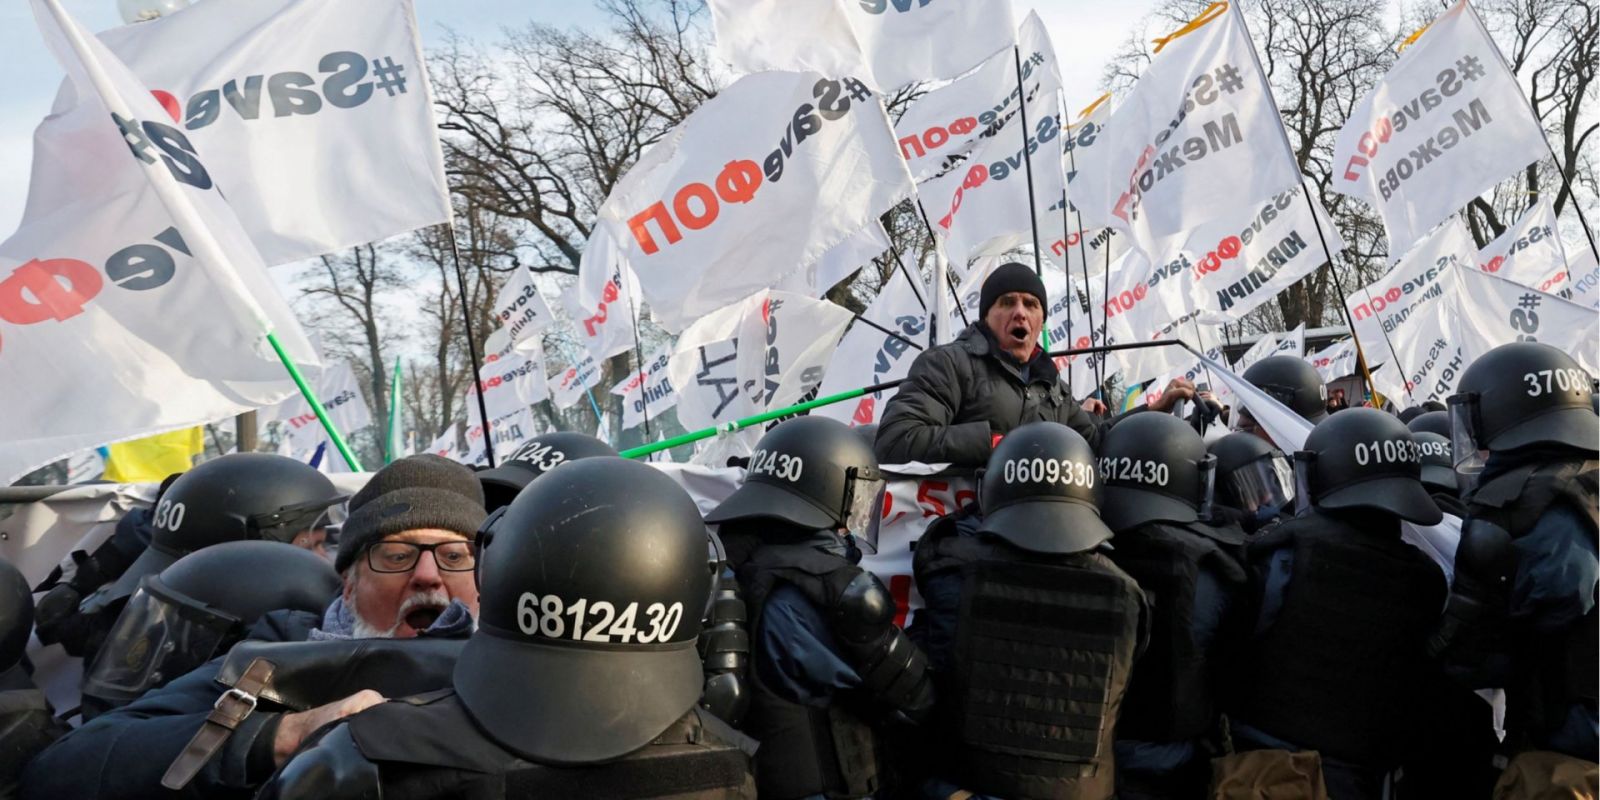 Выжил или погиб? Судьба одного пострадавшего во время протестных акций в Киеве остается неизвестной 